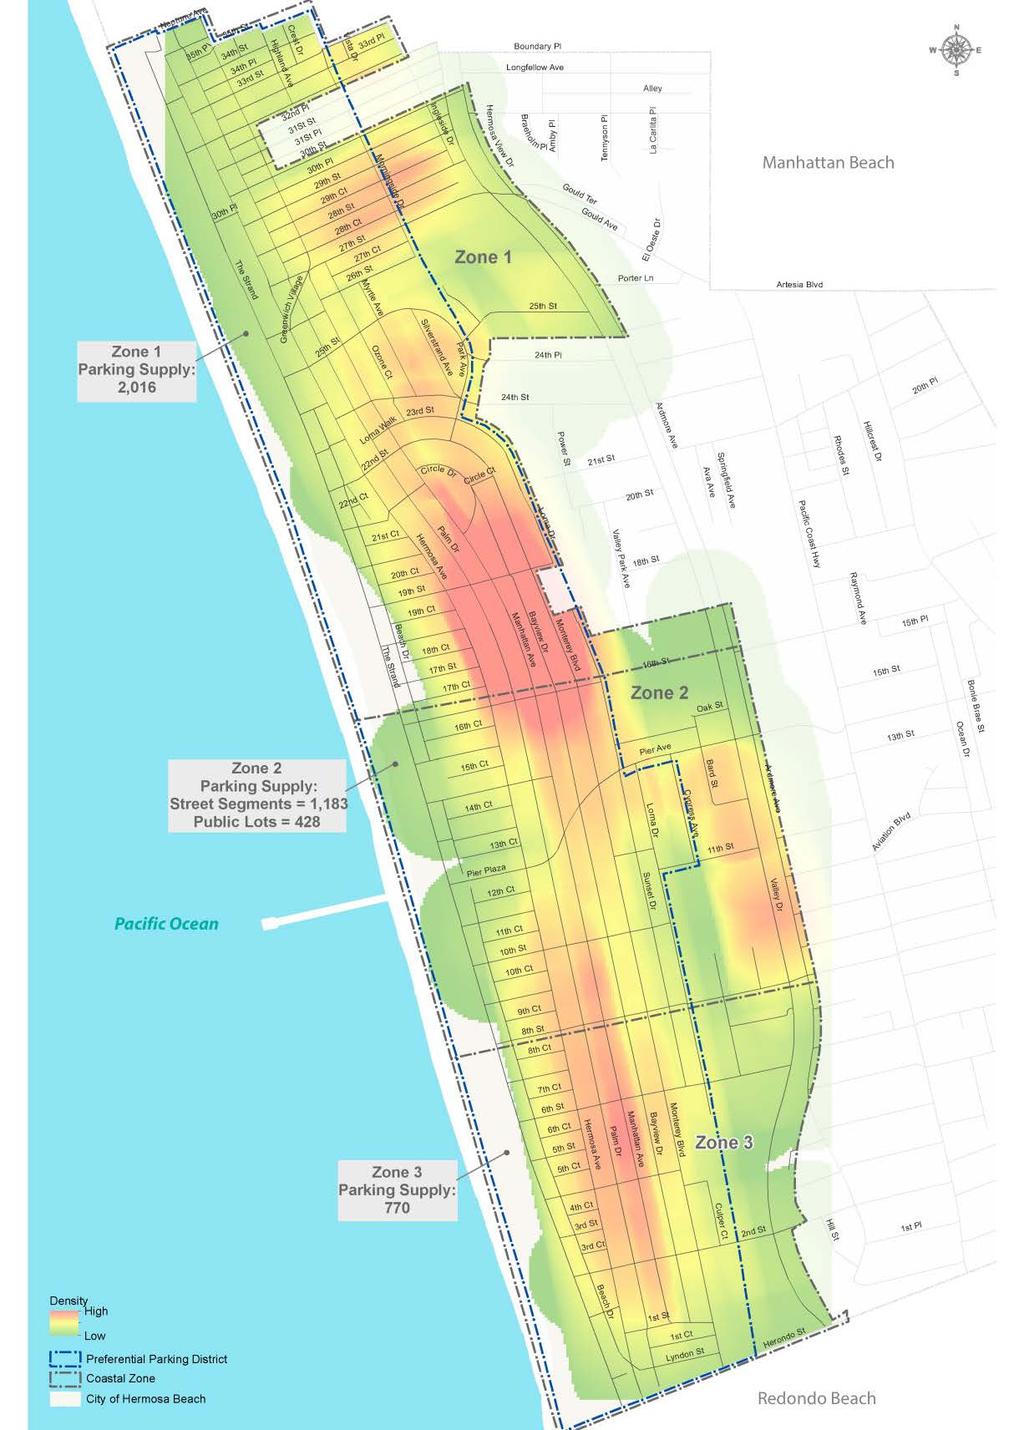 Figure 9 Coastal Zone Public Parking Occupancy Density on a Weekend